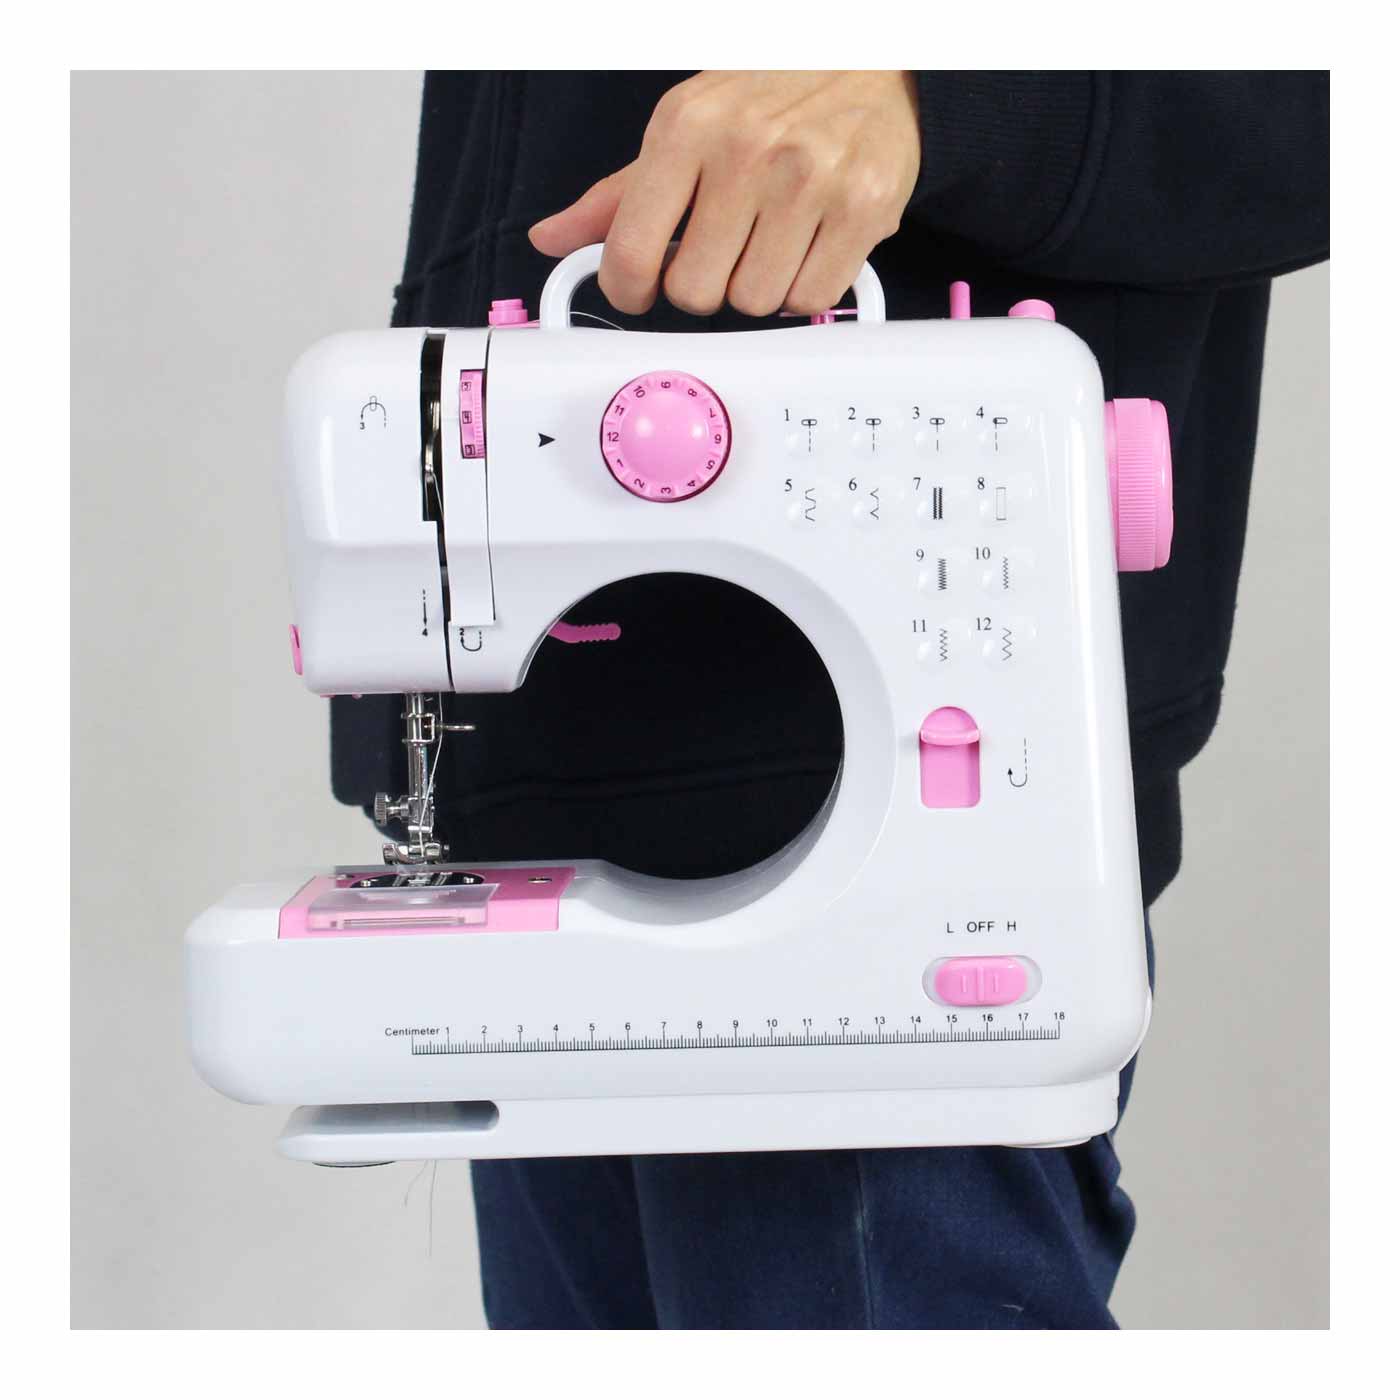 12種類の縫い目で縫える かわいいコンパクト電動ミシン ピンク フレーム はさみなどツール 手づくり素材 道具 手芸 手づくりキット バイヤーセレクトの通販 フェリシモパートナーズ